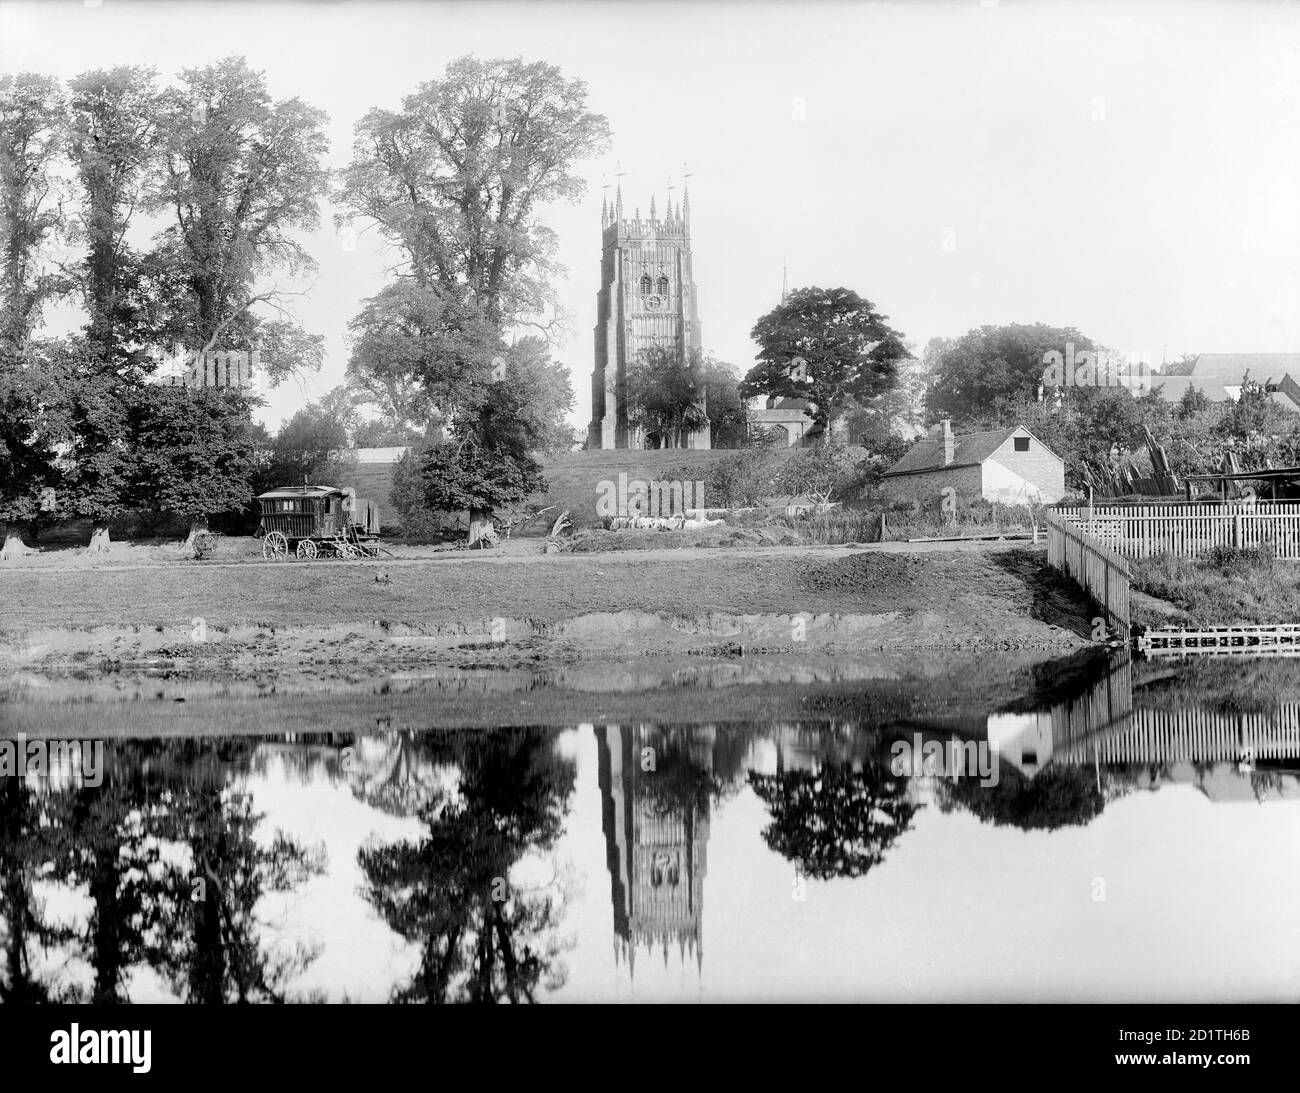 ABBEY PARK, Evesham, Worcestershire. Blick von den Workman Gardens über den Fluss Avon in Richtung Abtei. Der Glockenturm wurde nach 1513 von Abt Lichfield erbaut und nach der Auflösung durch den allgemeinen Abriss der Abtei unberührt. Zwei Wagen im Zigeunerstil stehen am gegenüberliegenden Flussufer. Fotografiert 1890 von Henry Taunt. Stockfoto